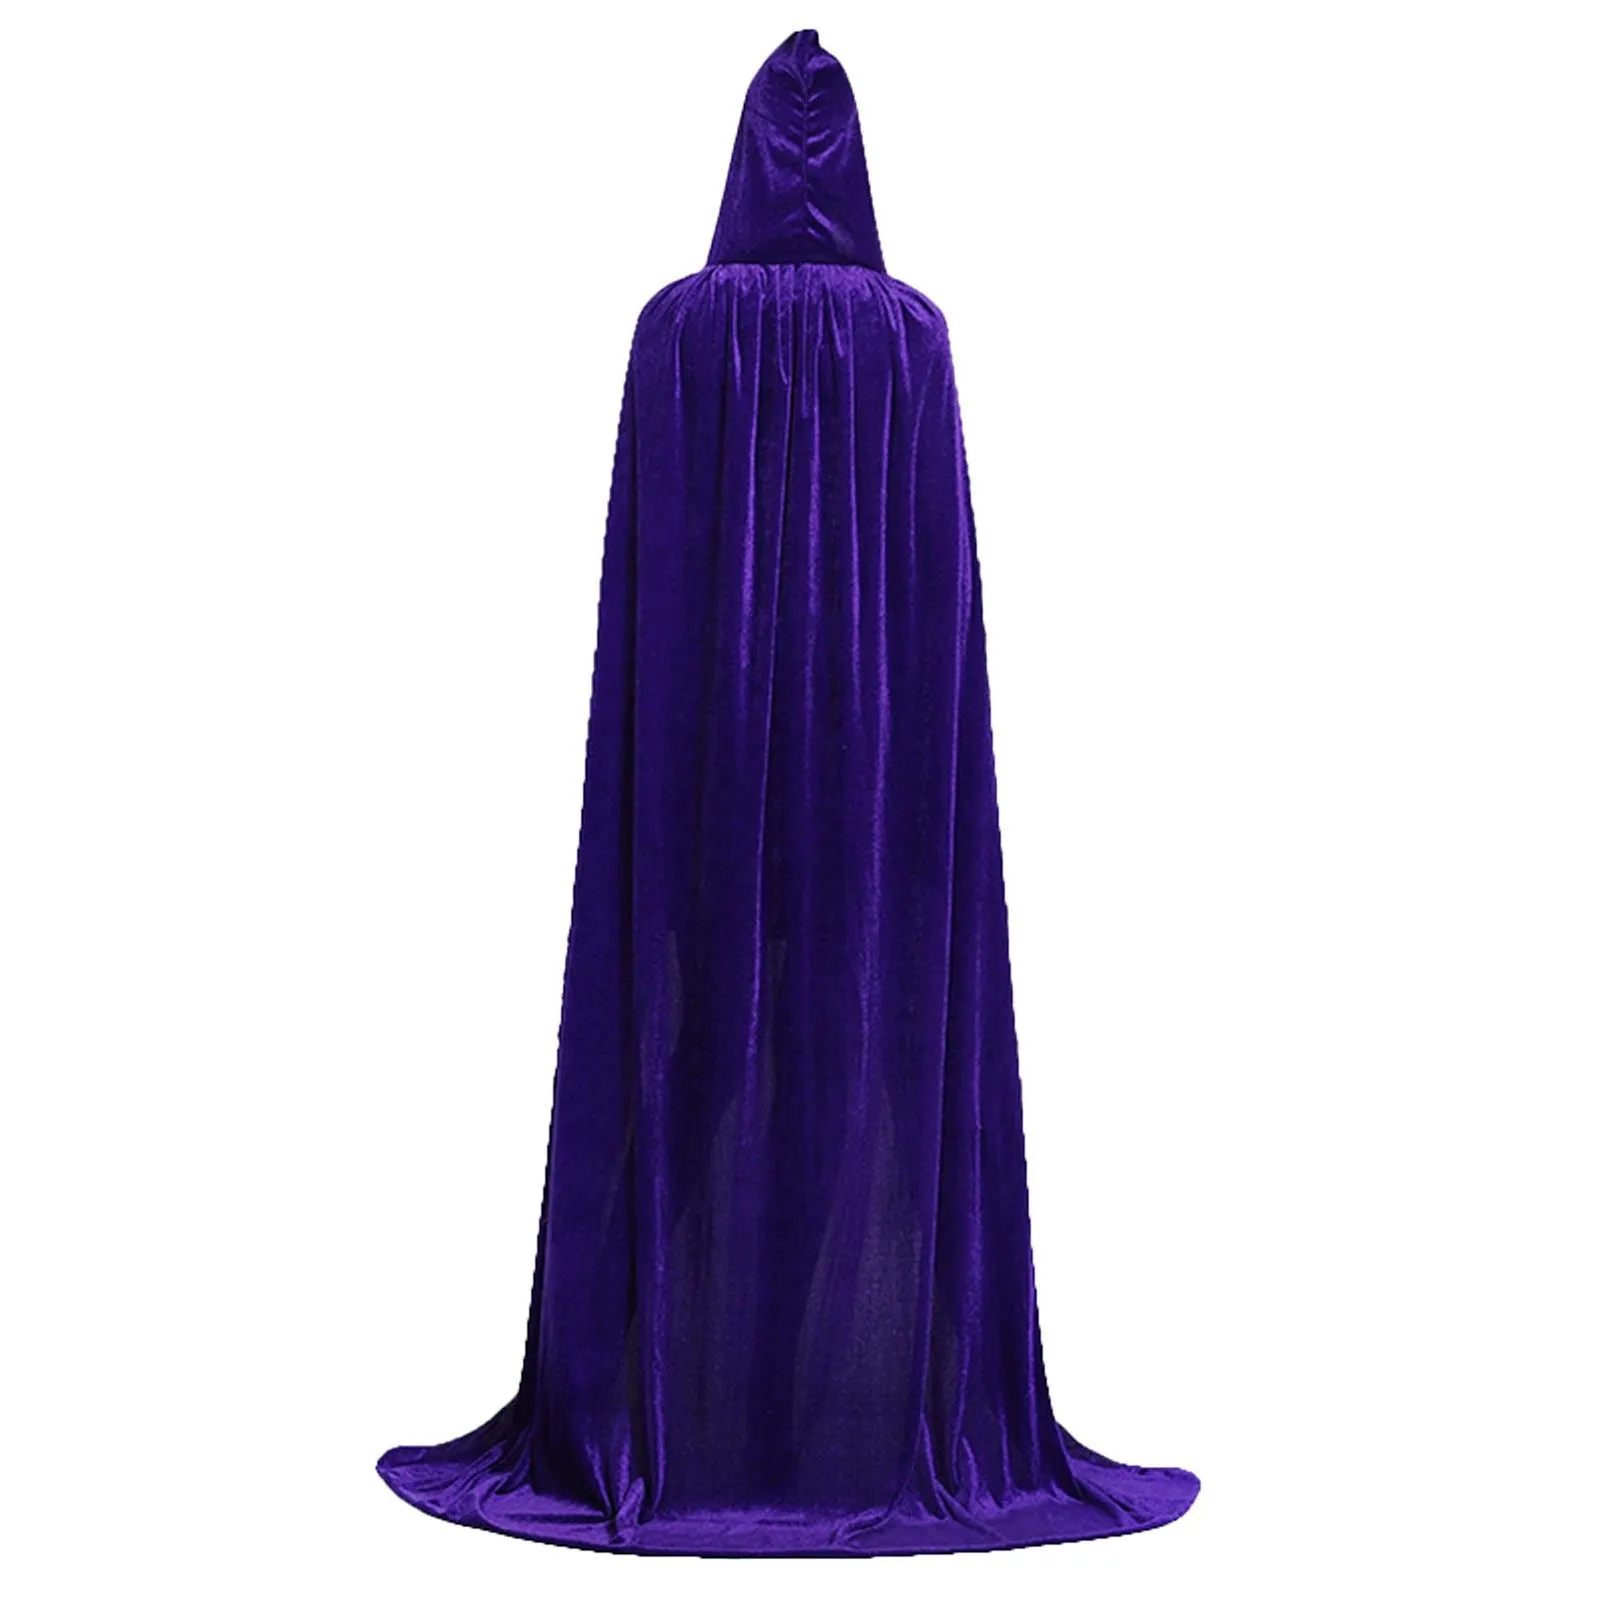 2022 Halloween Favor Costume Unisex Hooded Cloak Long Velvet Cape For Christmas Cosplay Costumes Blue Red White Black Gray Purple